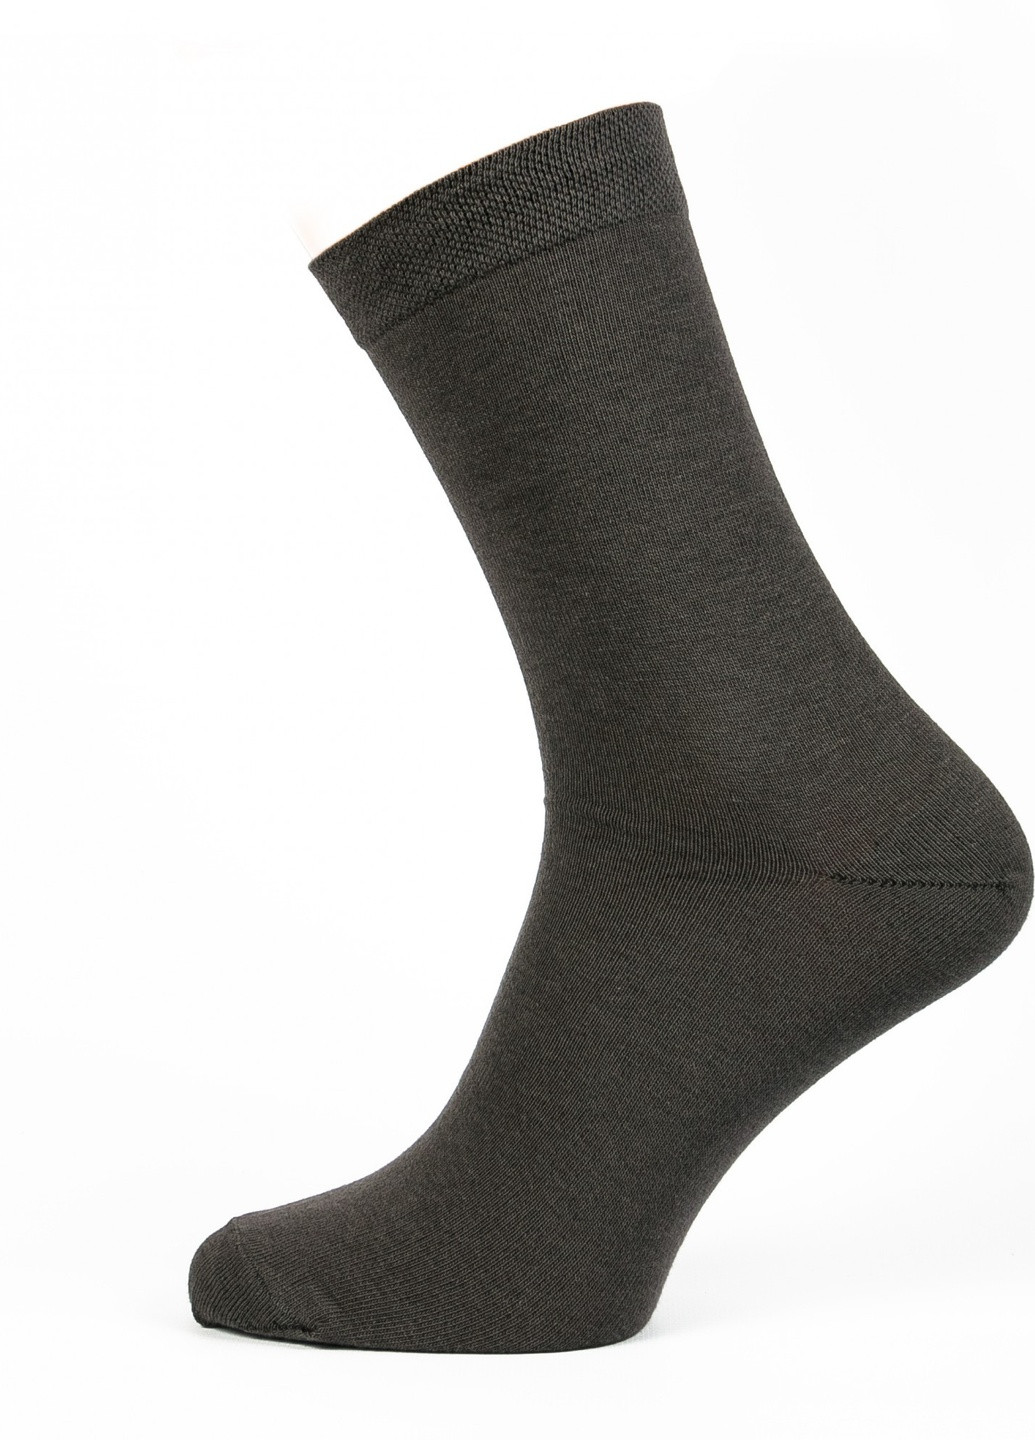 Шкарпетки чоловічі ТМ "Нова пара" 401 високі НОВА ПАРА висока модель (257062011)